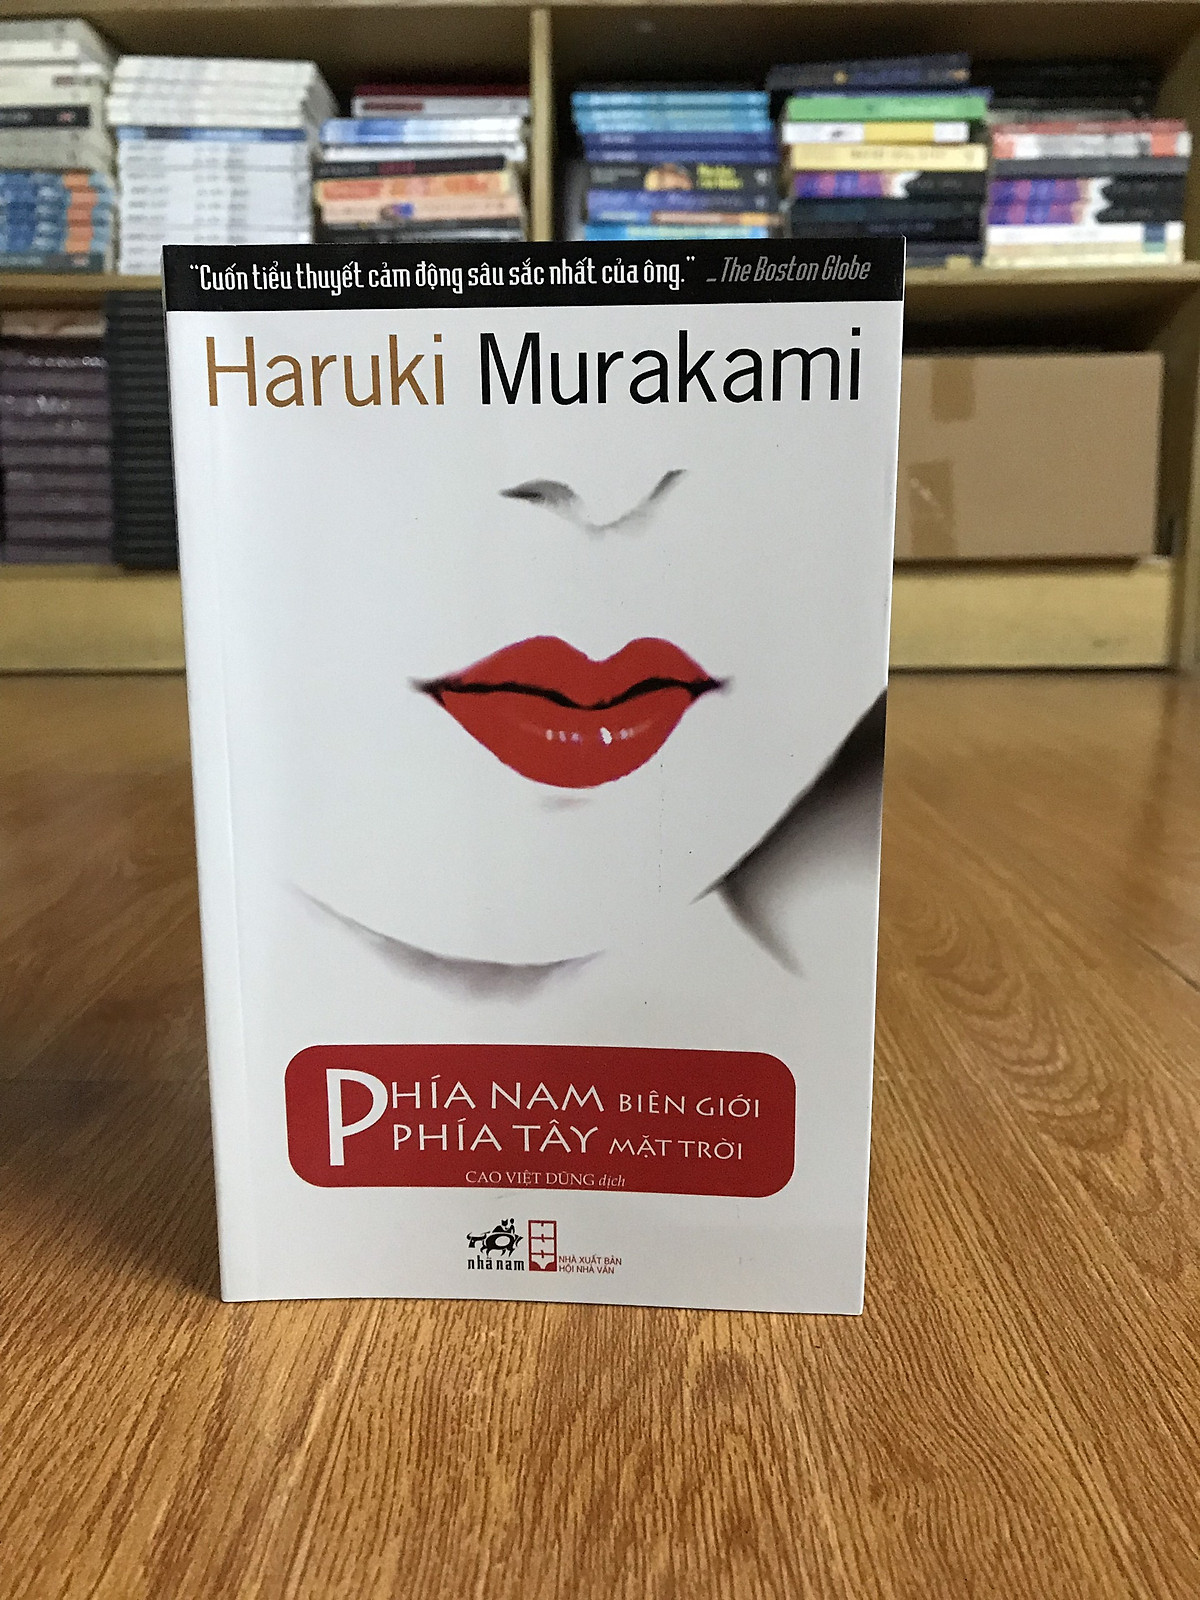 Combo sách của Haruki Murakami: Rừng Nauy + Biên Niên Ký Chim Vặn Dây Cót + Nhảy Nhảy Nhảy + Phía Nam Biên Giới, Phía Tây Mặt Trời